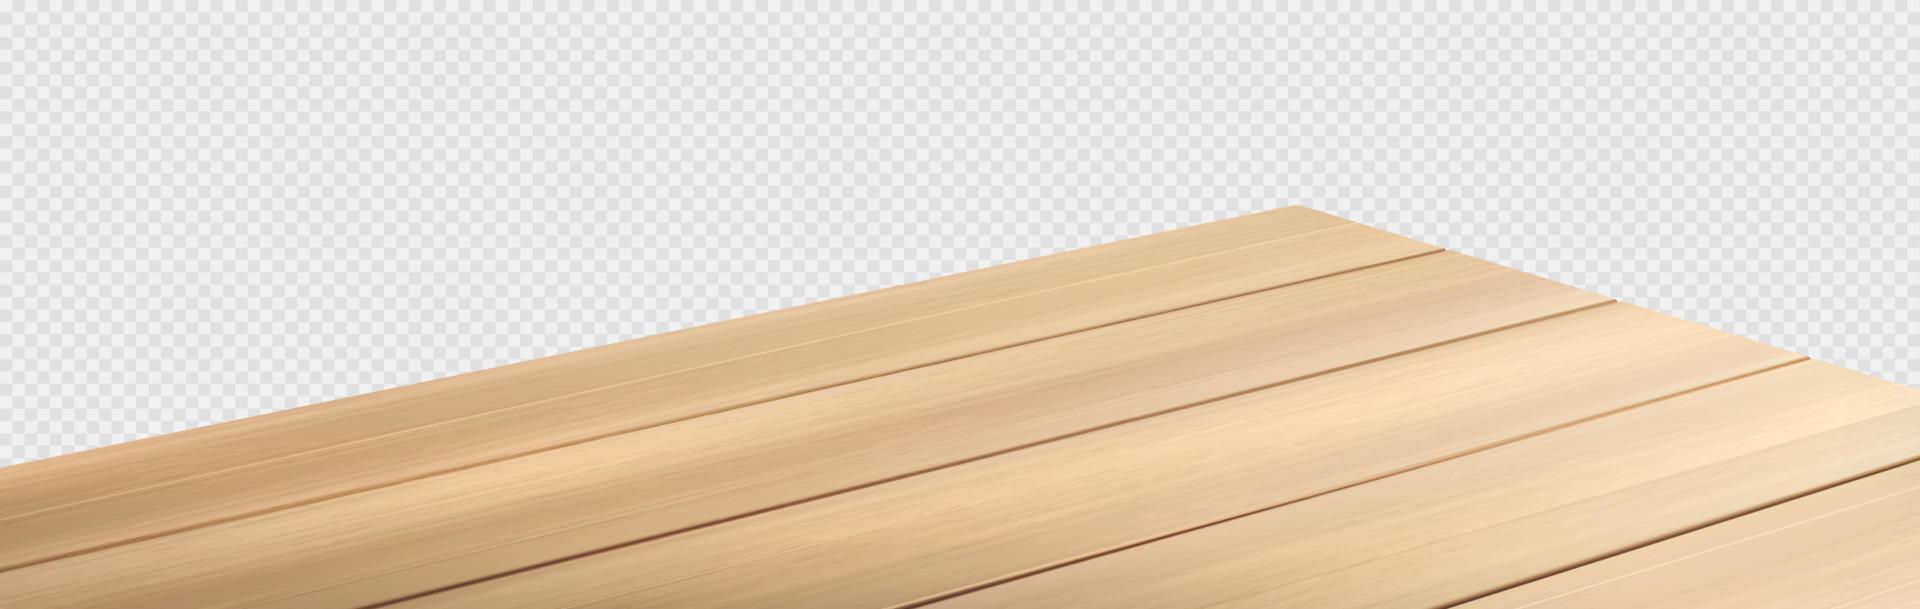 mesa de comedor de madera, vector de perspectiva de esquina